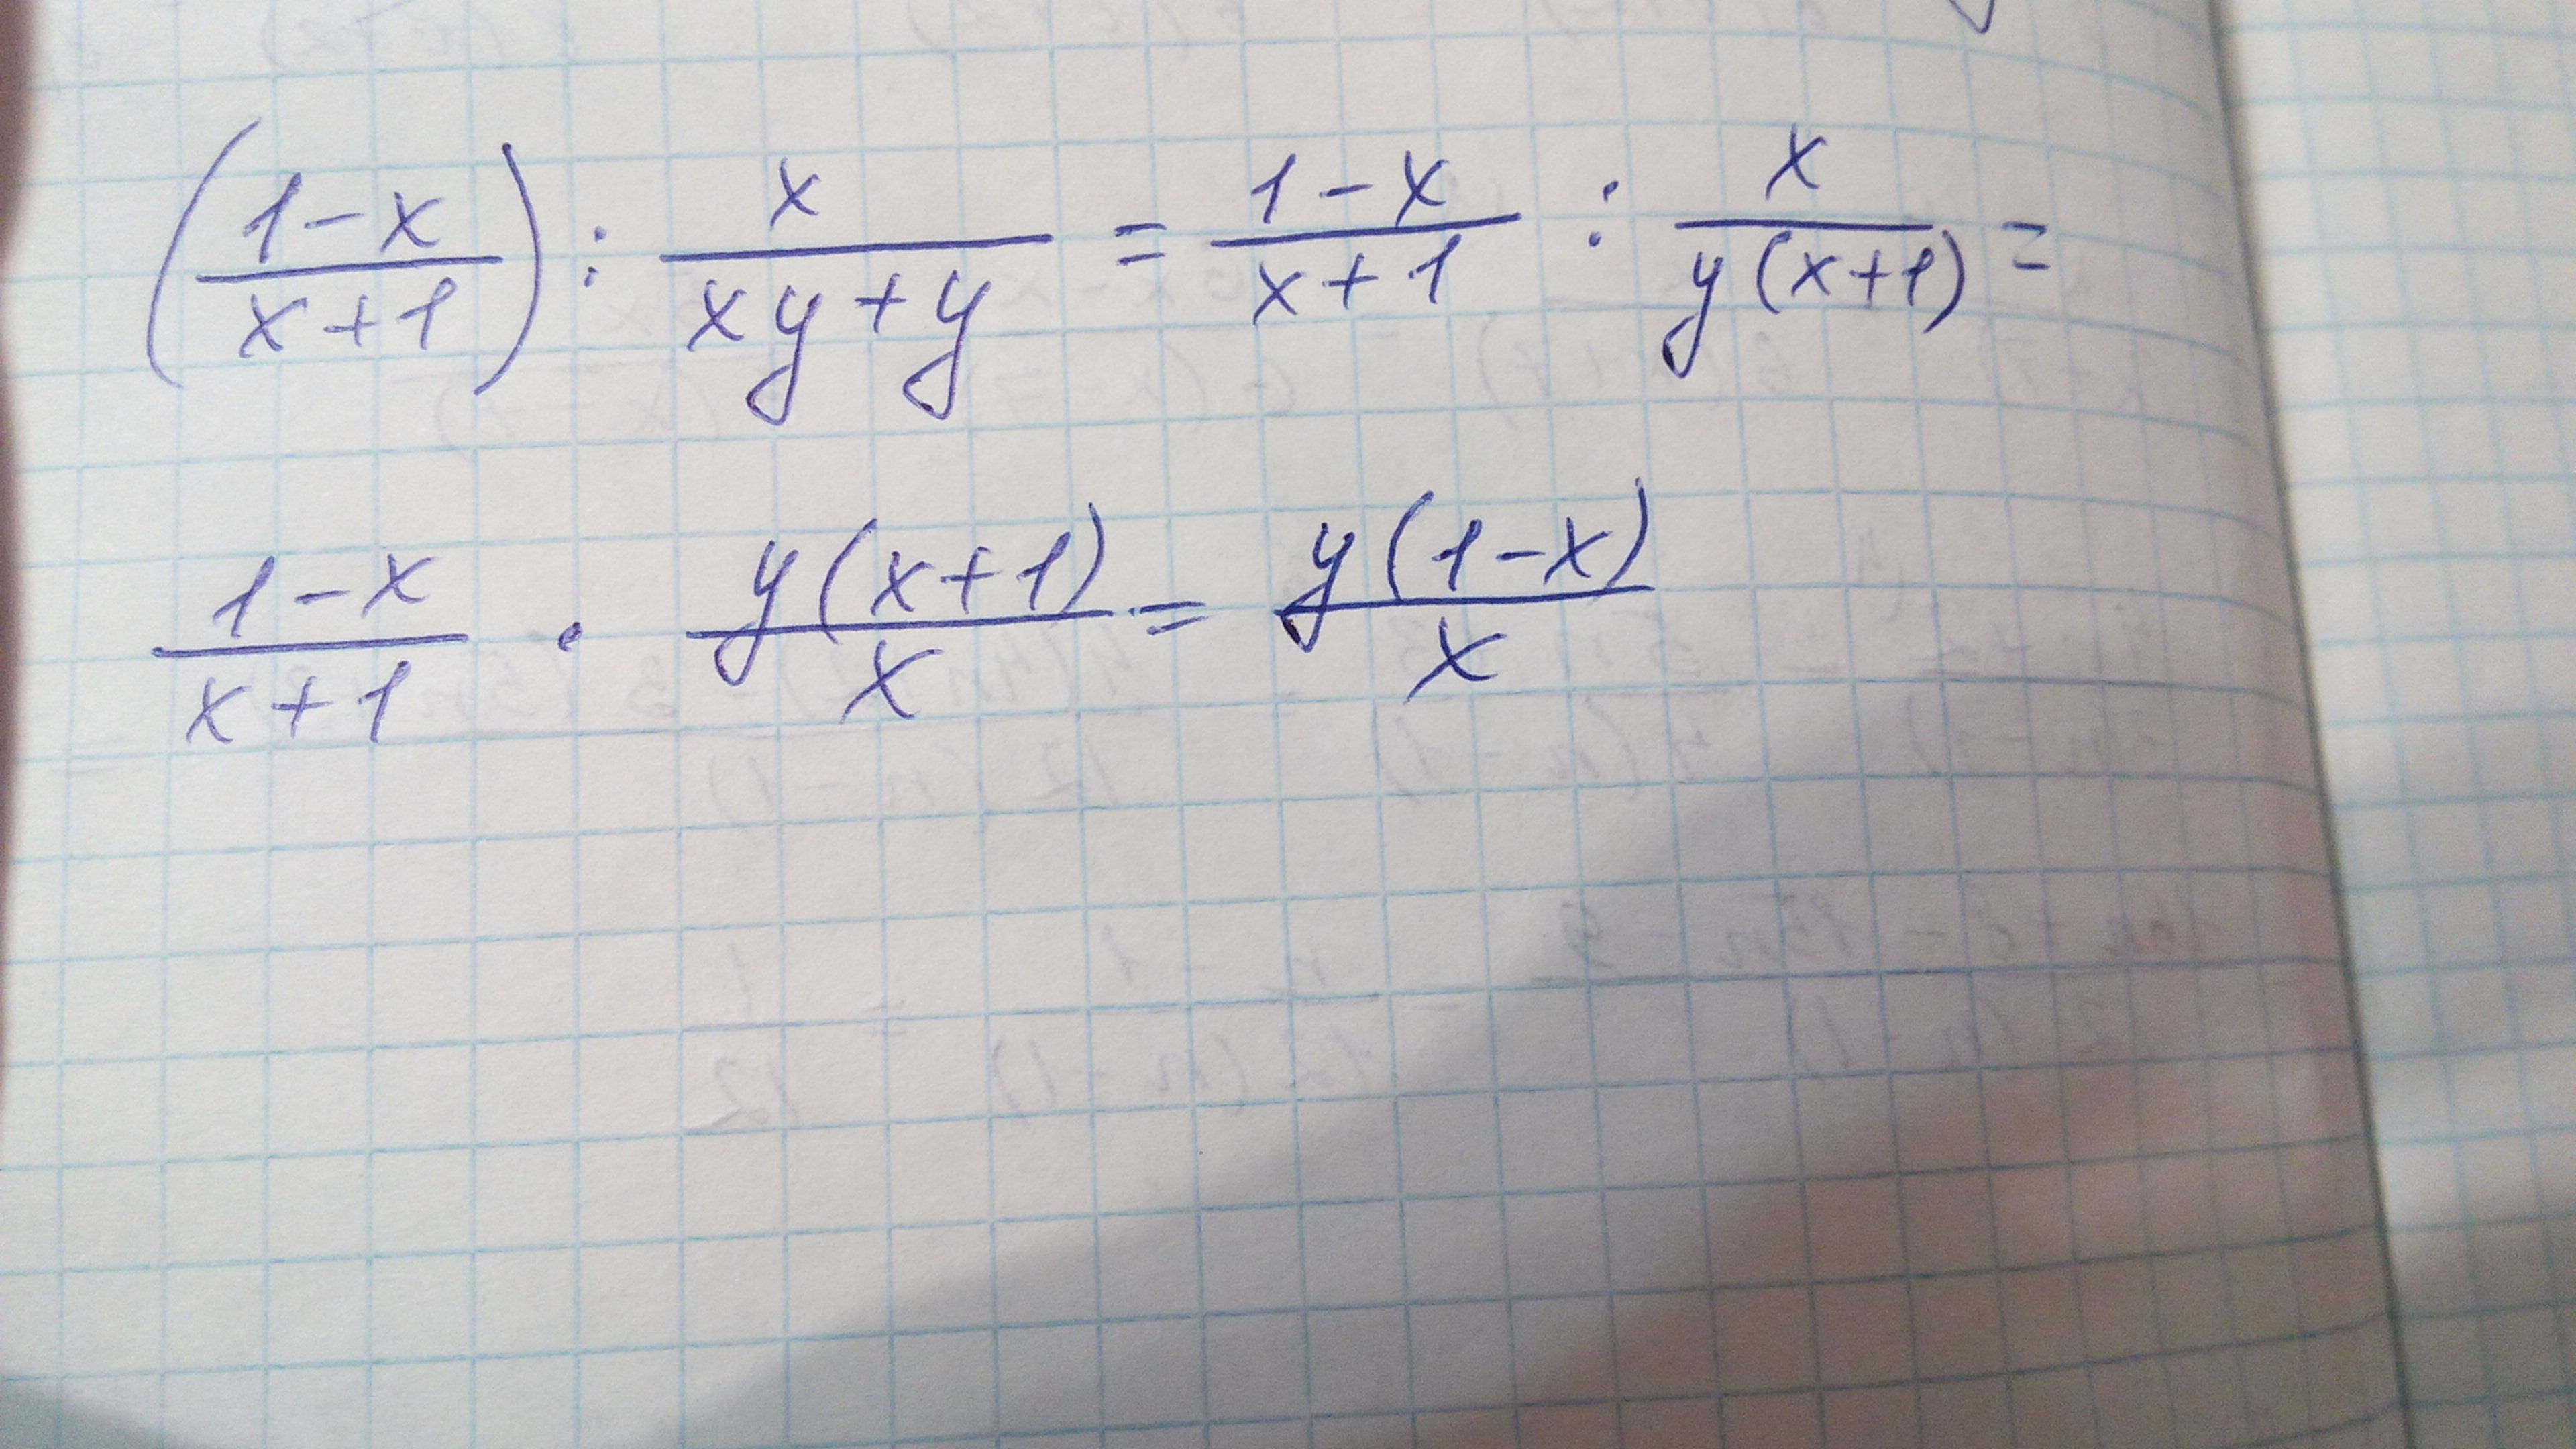 8x 1 x 22 x. (X-1)(X+1). 1/X^2. 1x1. (X+1)(X+1)(X++1) степень.